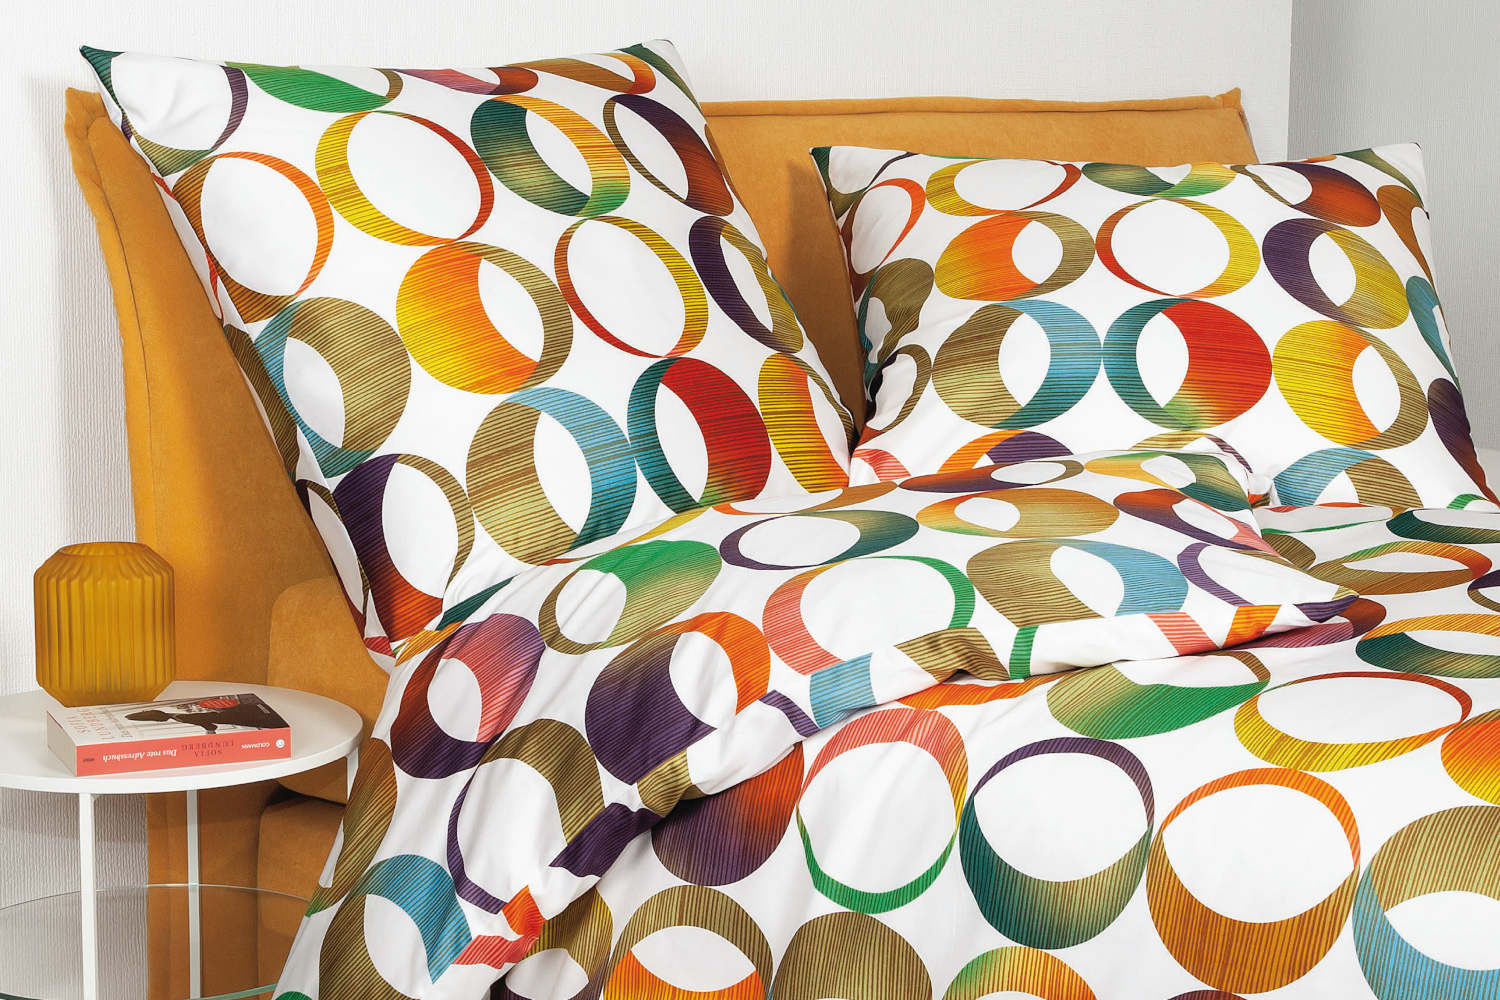 Janine Satin Bettwäsche modern art - Kreise multicolor, aus 100% Baumwolle  